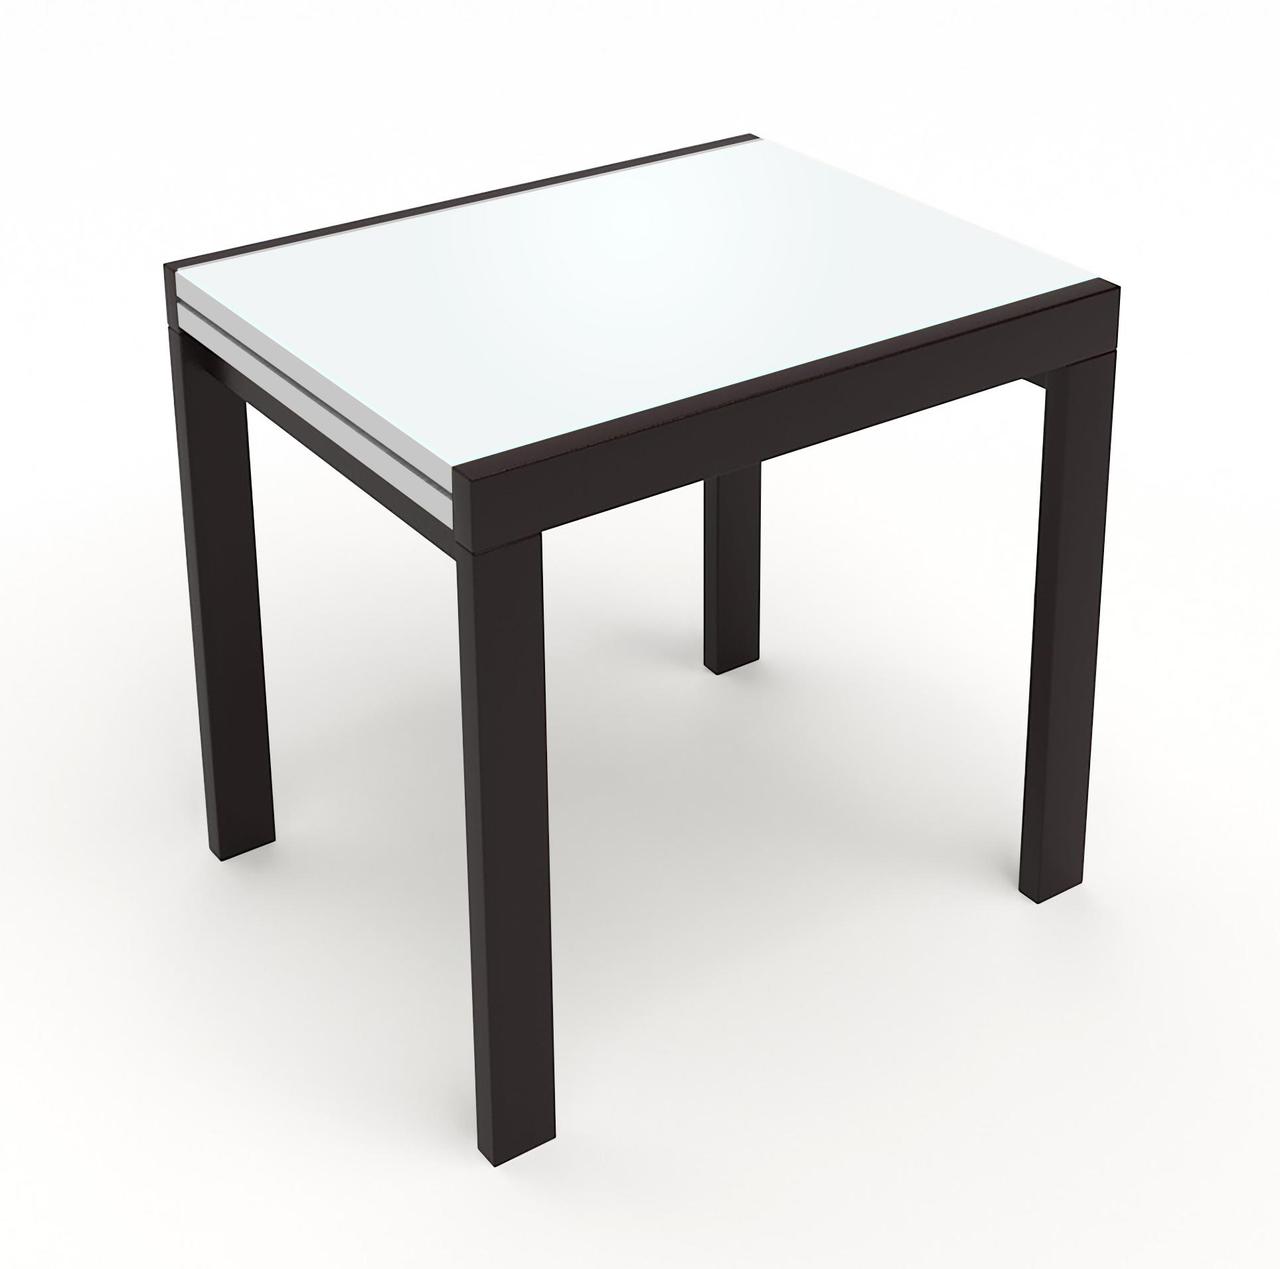 Скляний стіл на кухню Слайдер + скло Fusion Furniture, колір венге / скло біле